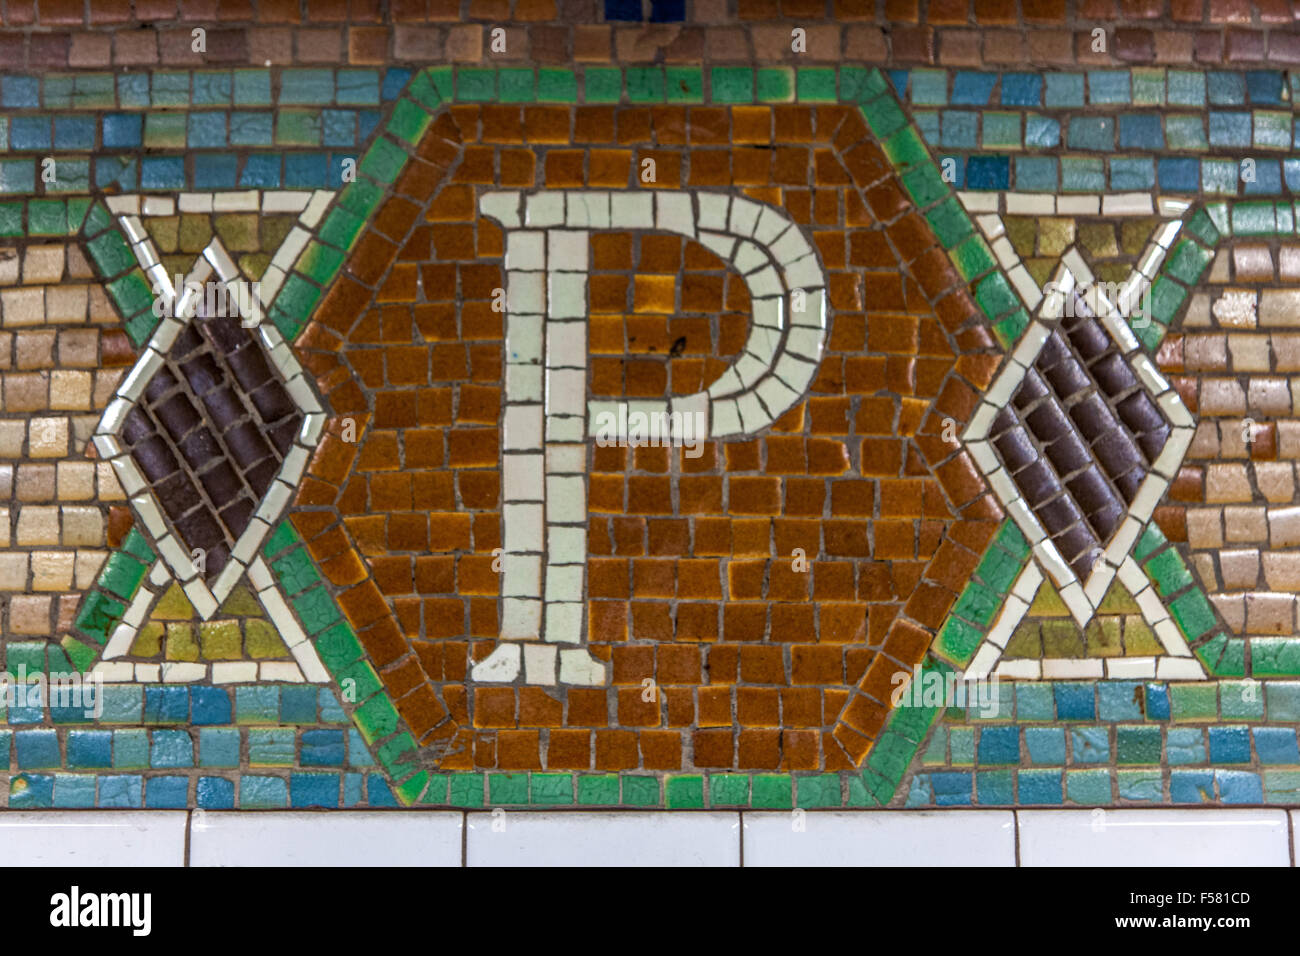 Segno di mosaico 34th Street Pennsylvania stazione della metropolitana, Manhattan, New York City, Stati Uniti d'America. Foto Stock